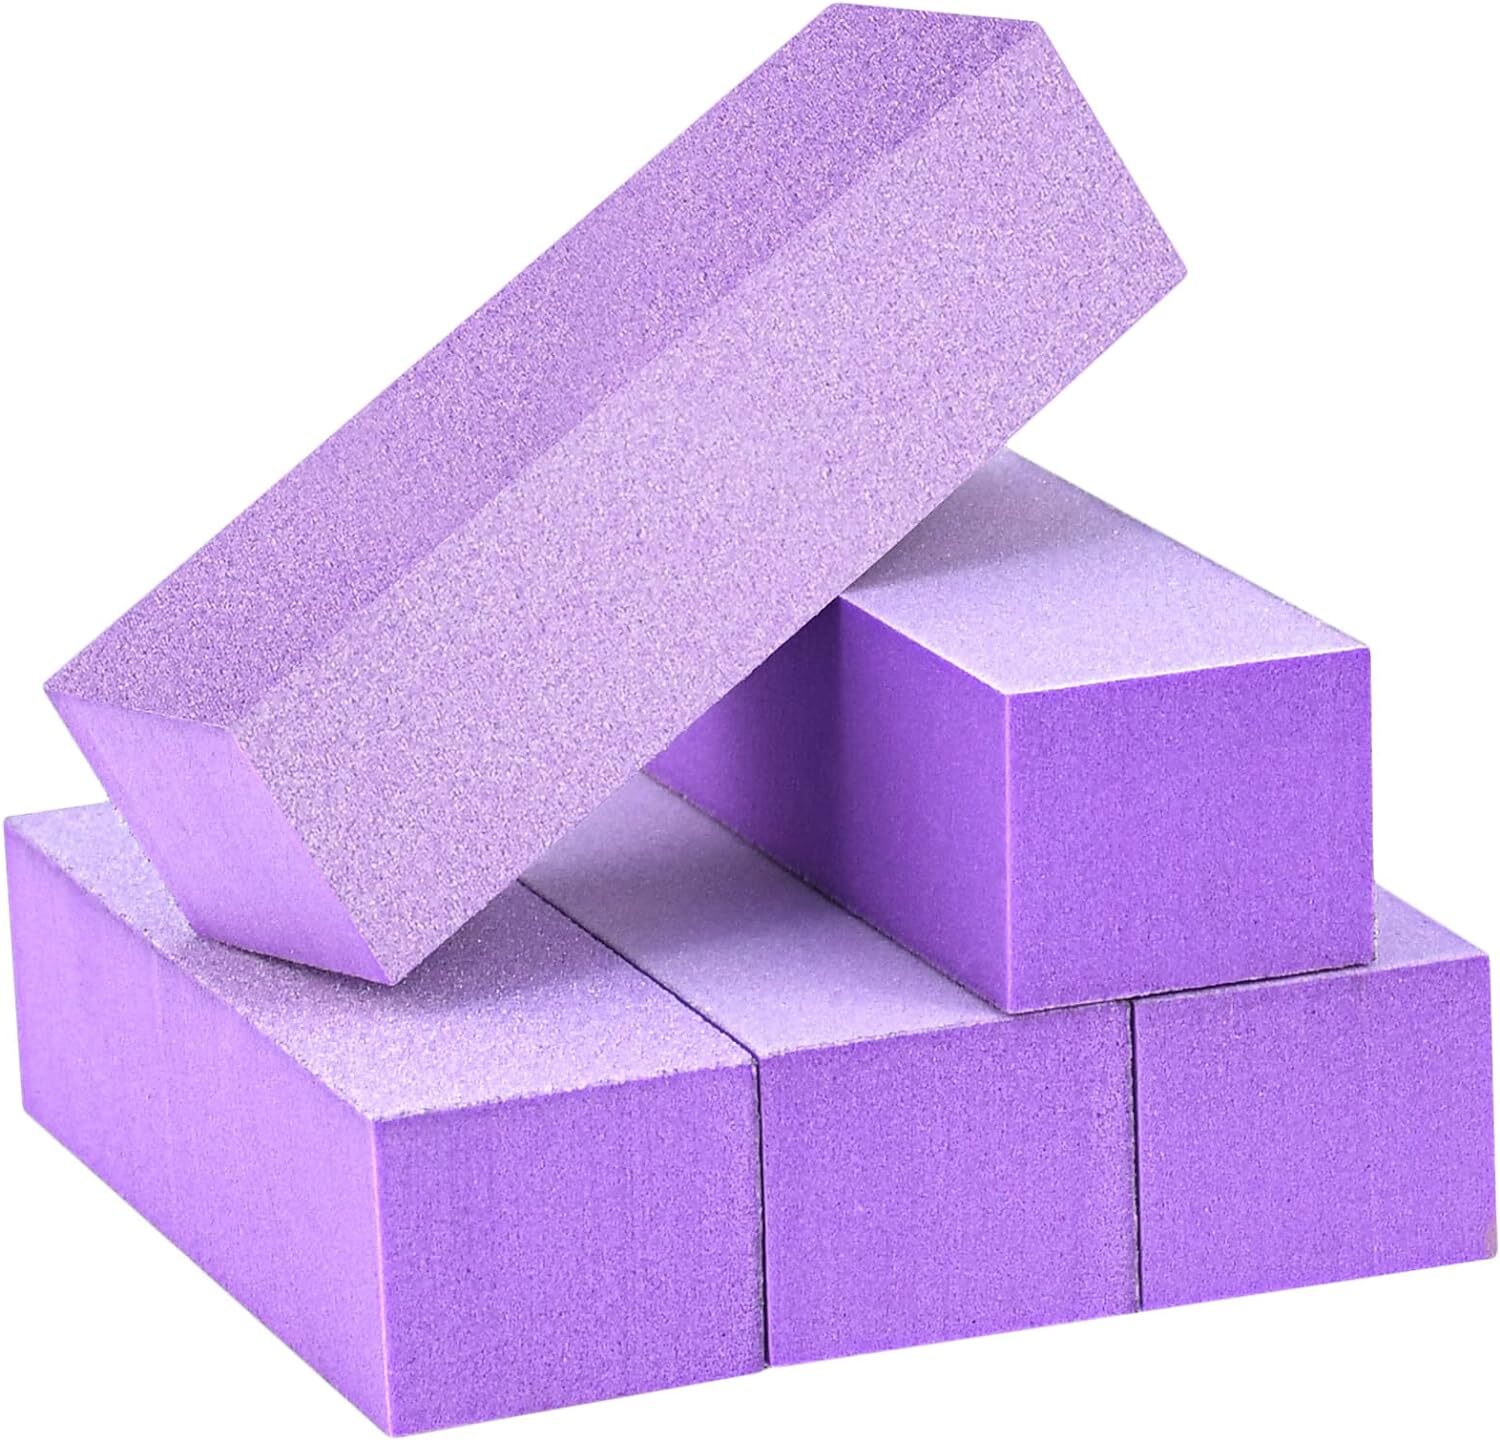 Five purple yoga blocks stacked in an asymmetric pattern